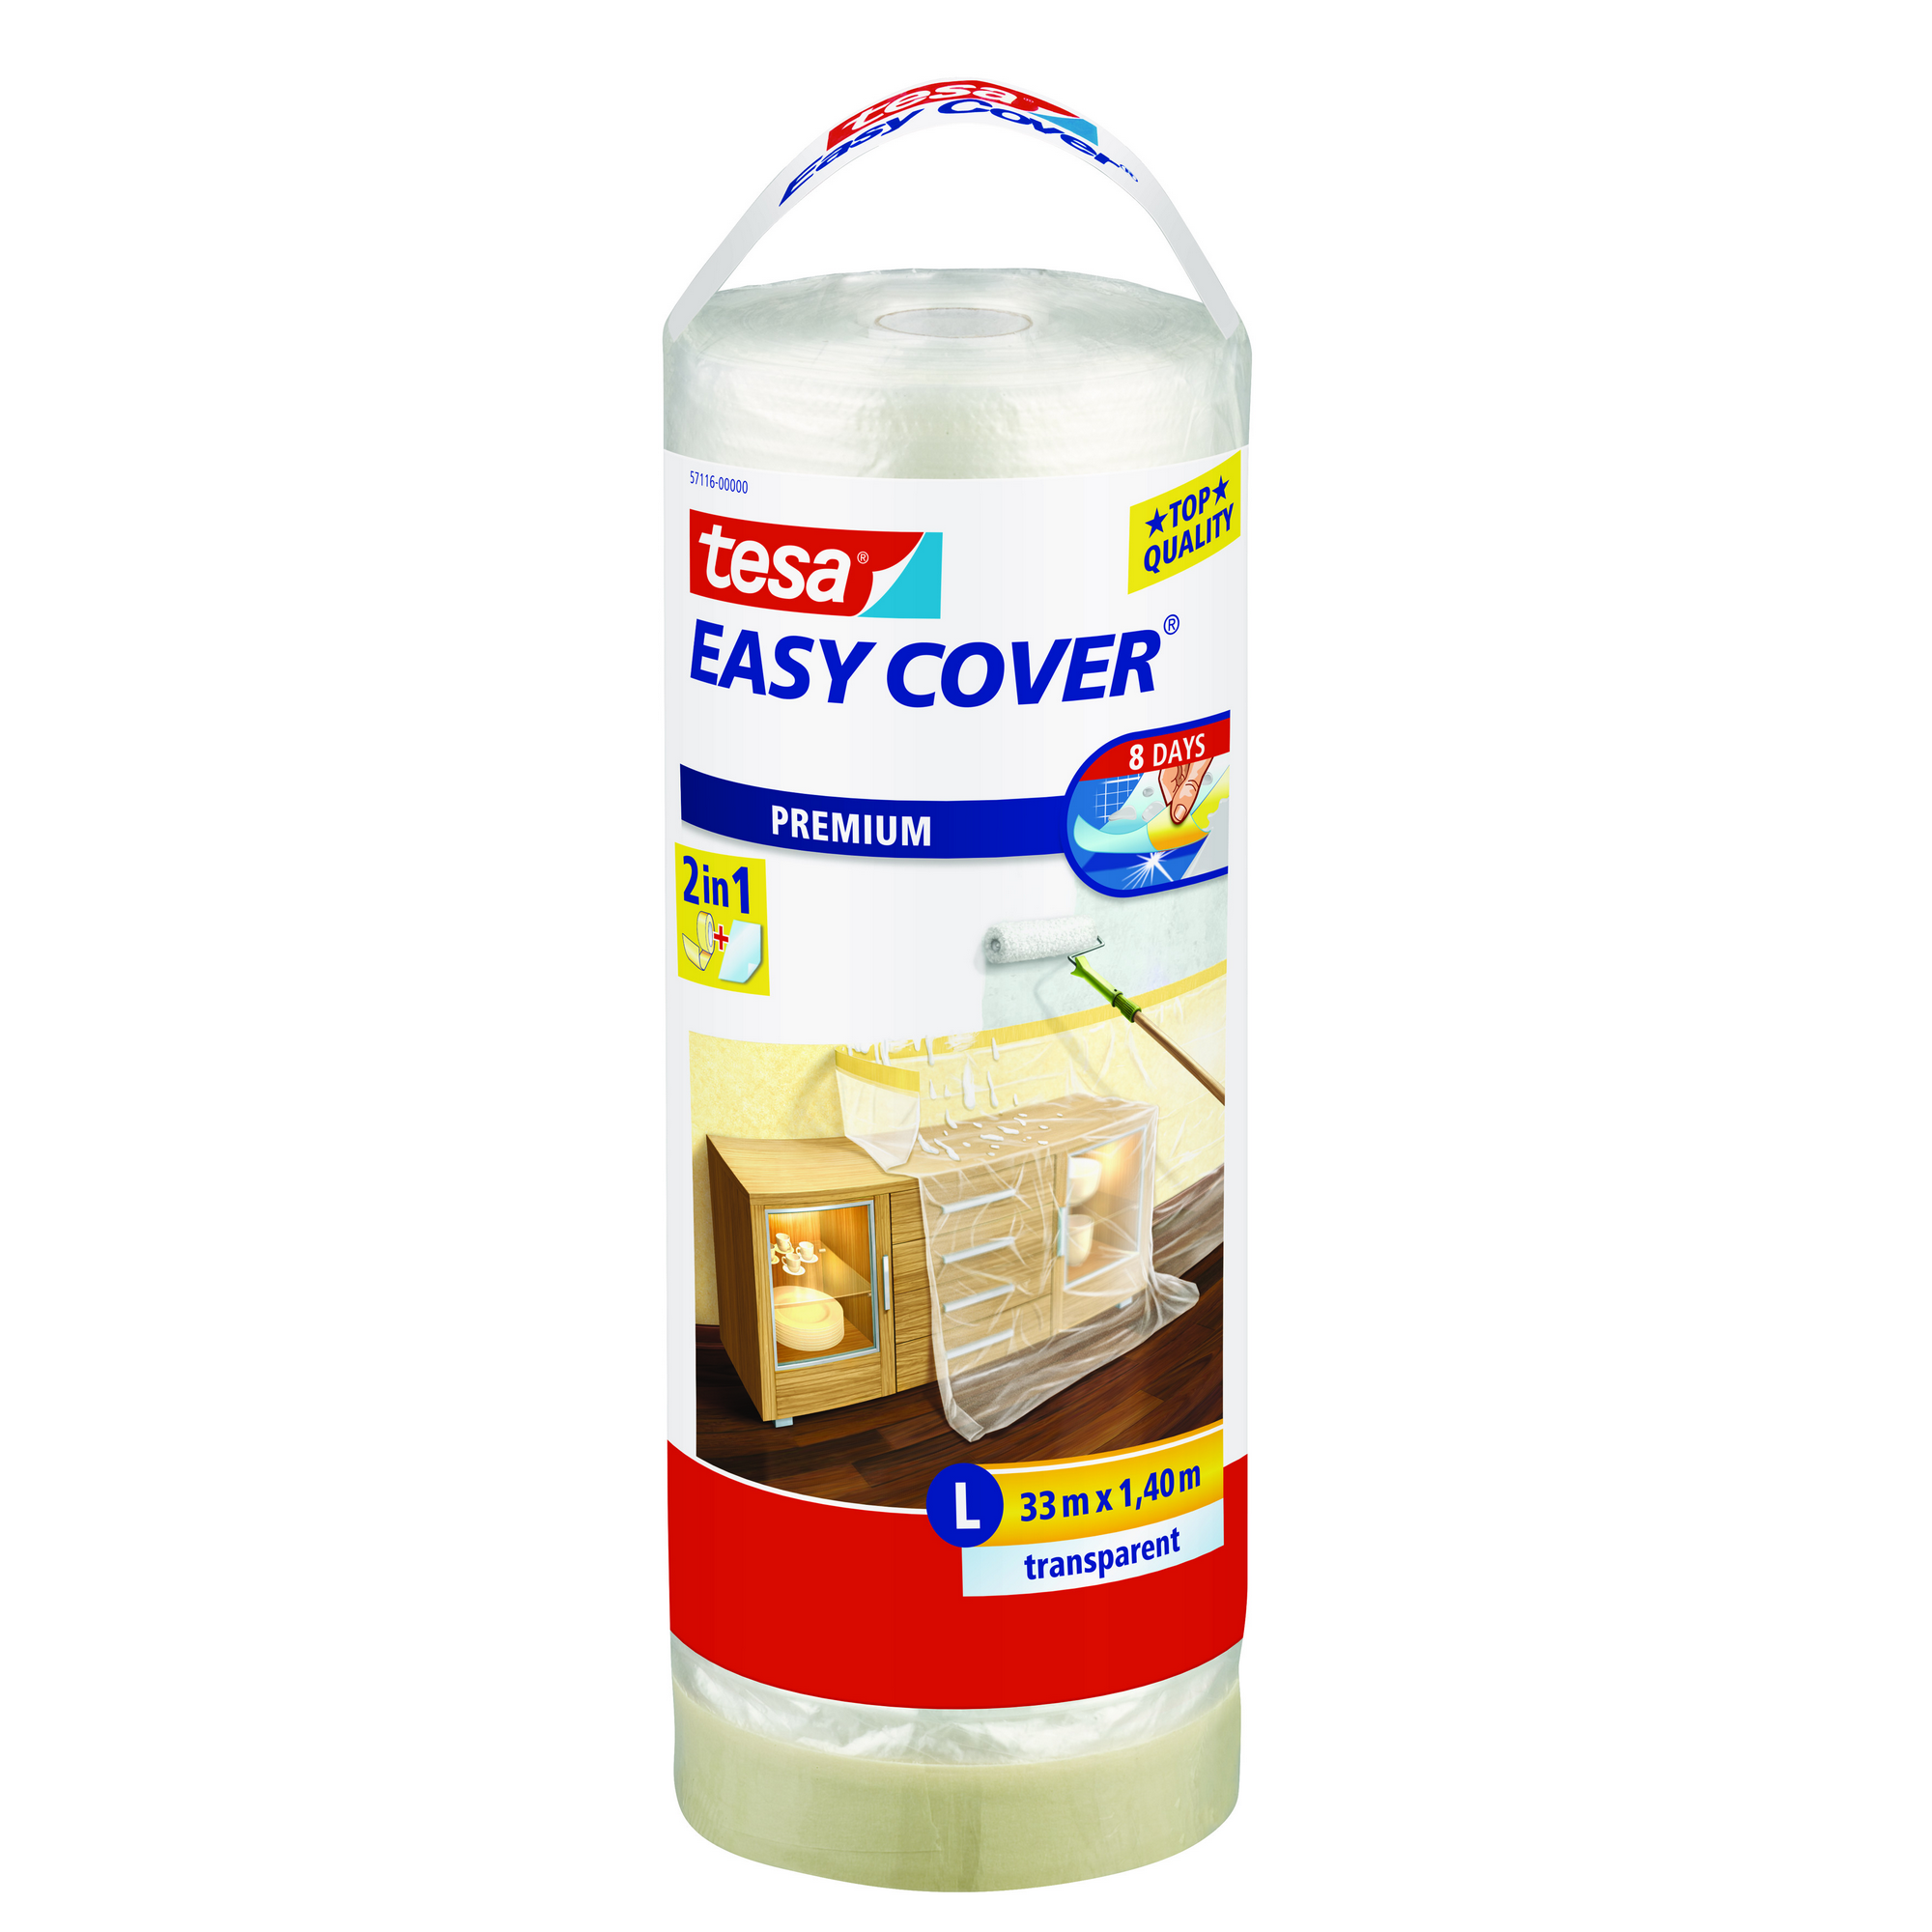 Tesa Abdeckfolie „Easy Cover Premium“ transparent 33 x 1,4 m + product picture